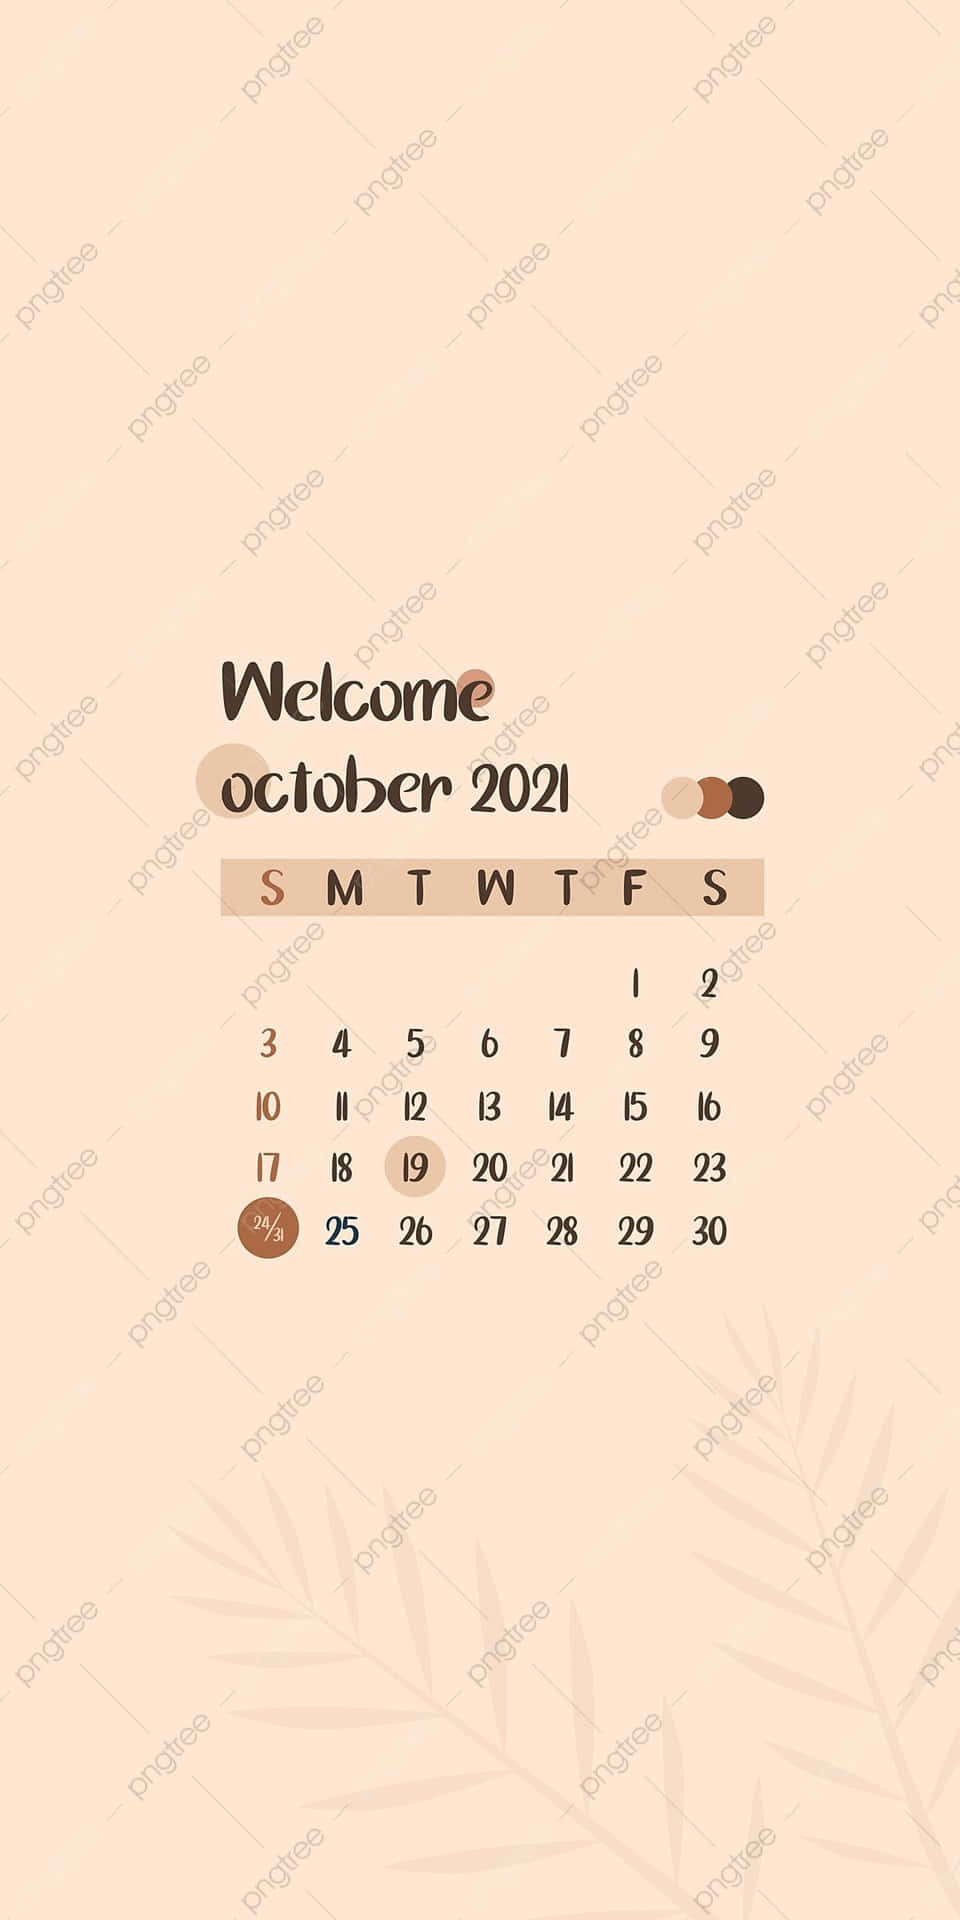 Manténun Registro De Fechas Importantes En Octubre Con Este Calendario 2021. Fondo de pantalla